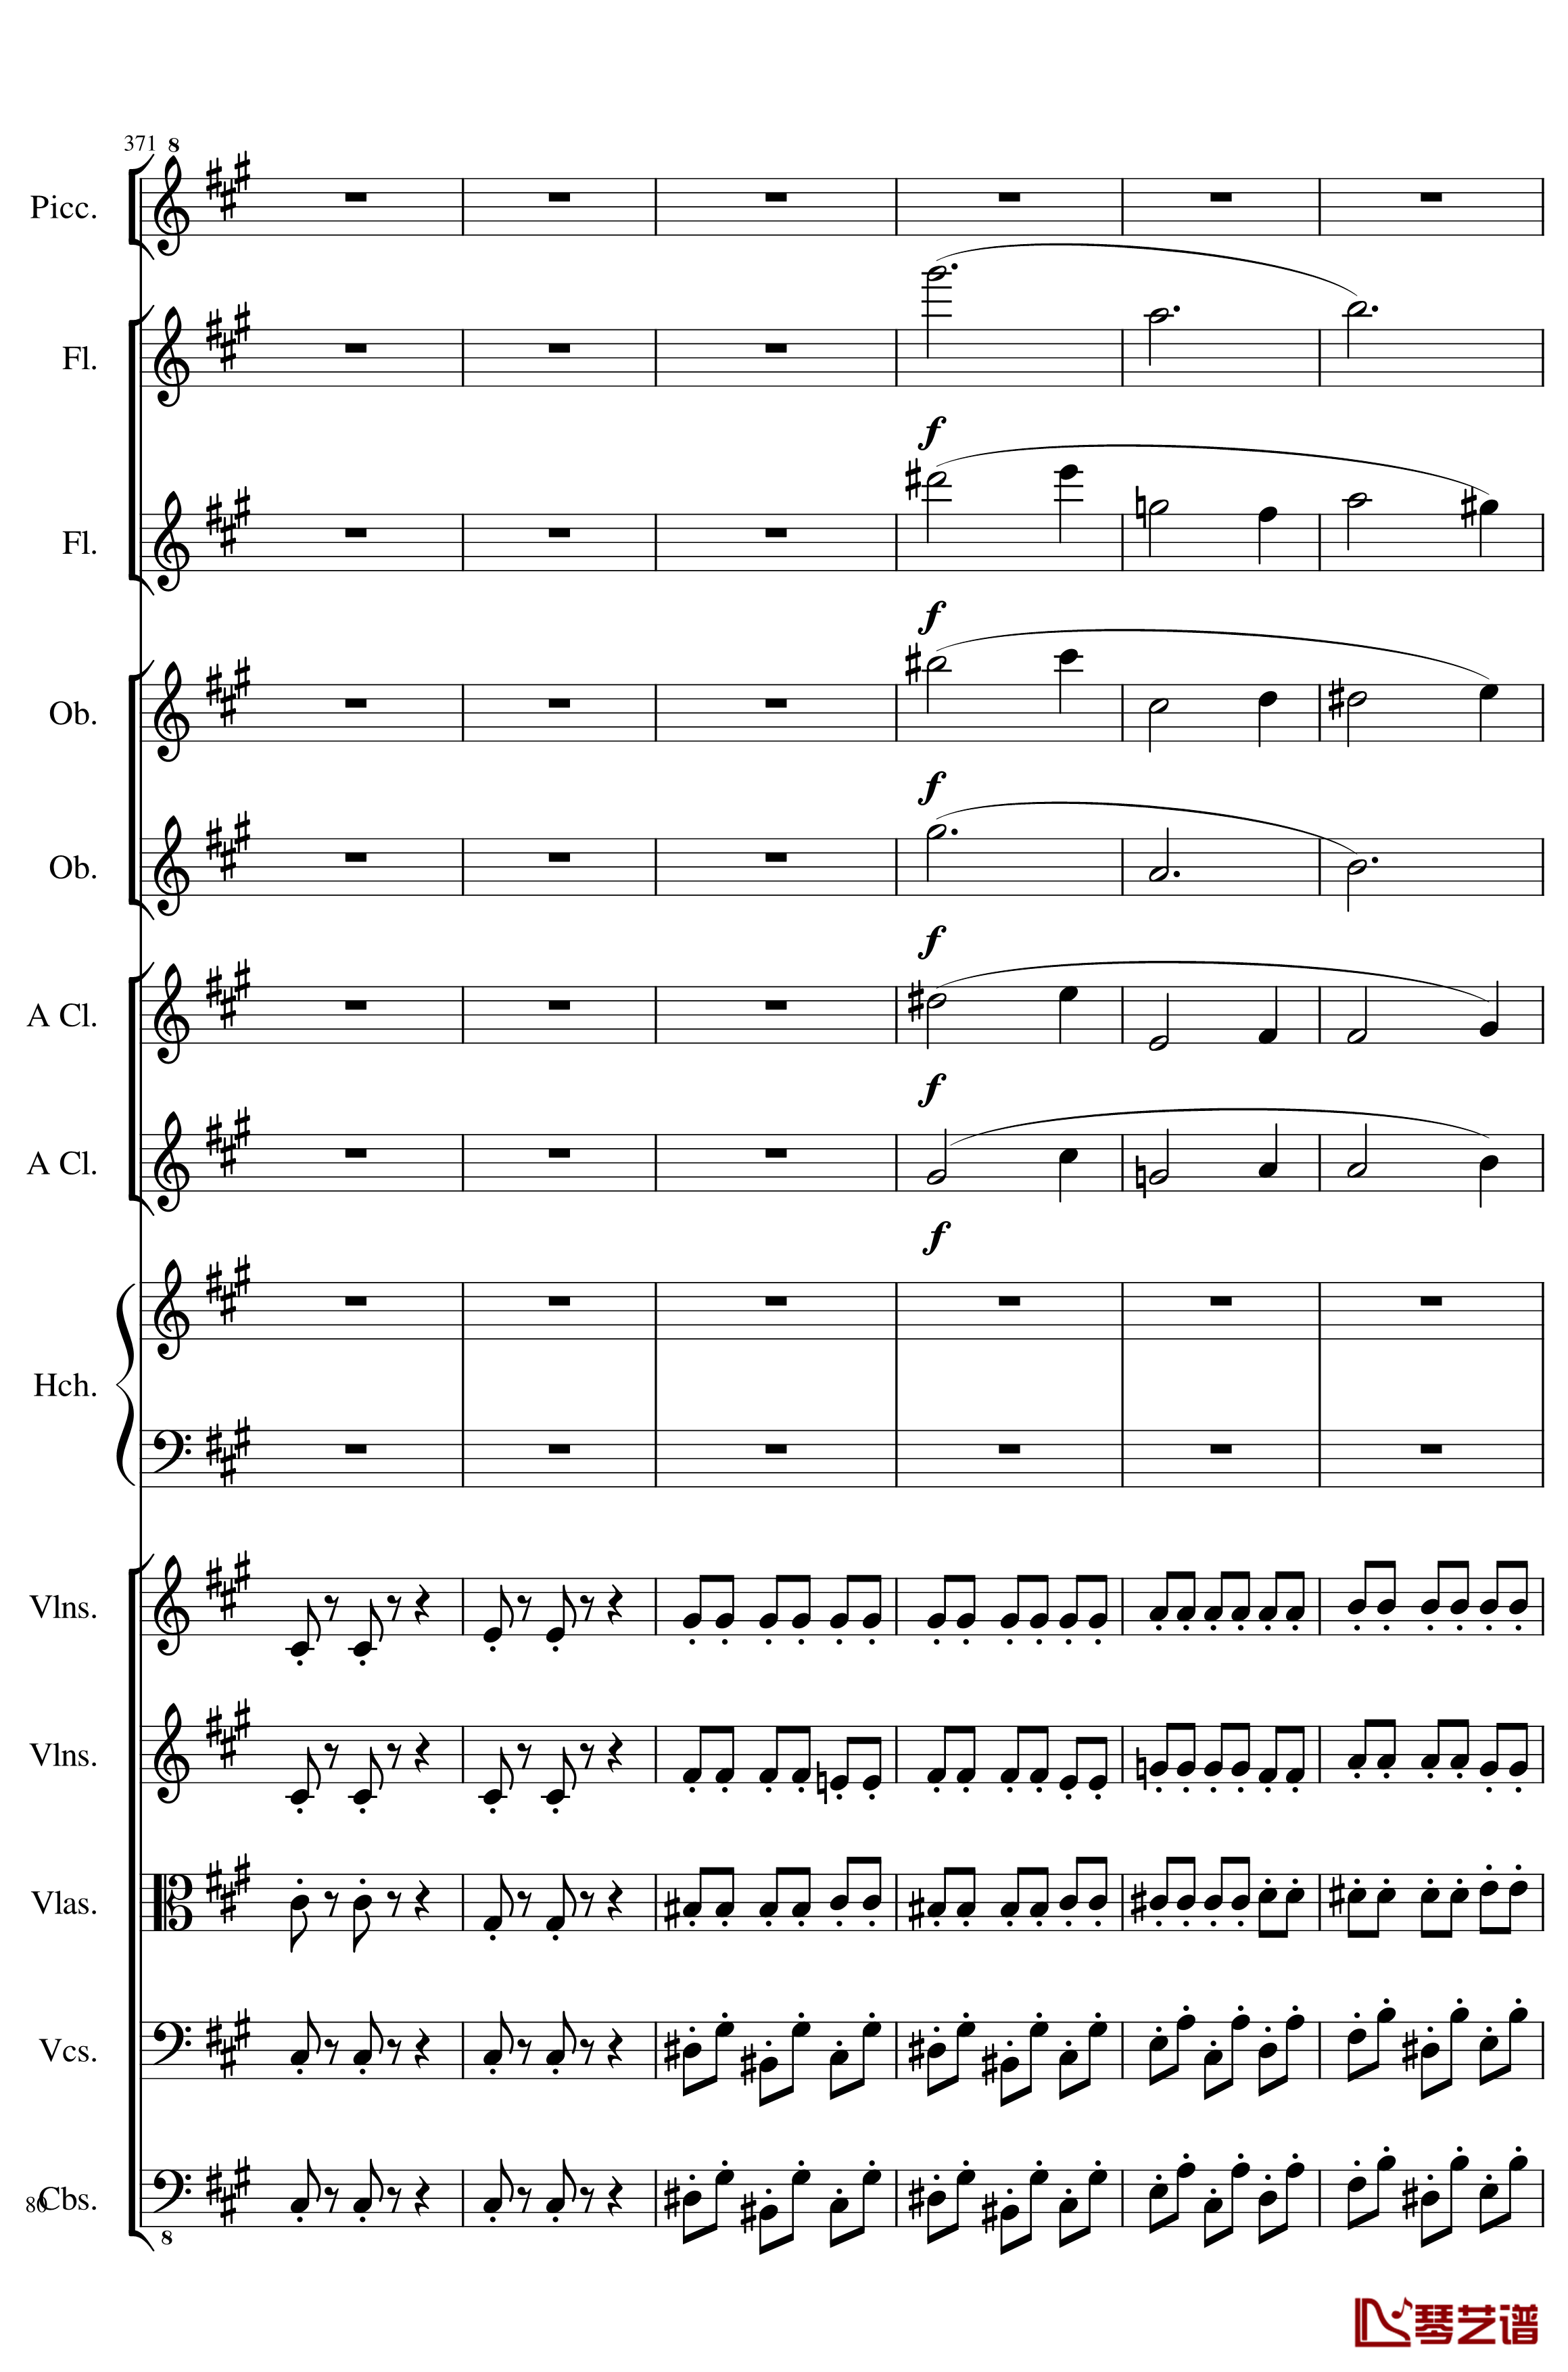 7 Contredanses No.1-7, Op.124钢琴谱-7首乡村舞曲，第一至第七，作品124-一个球80